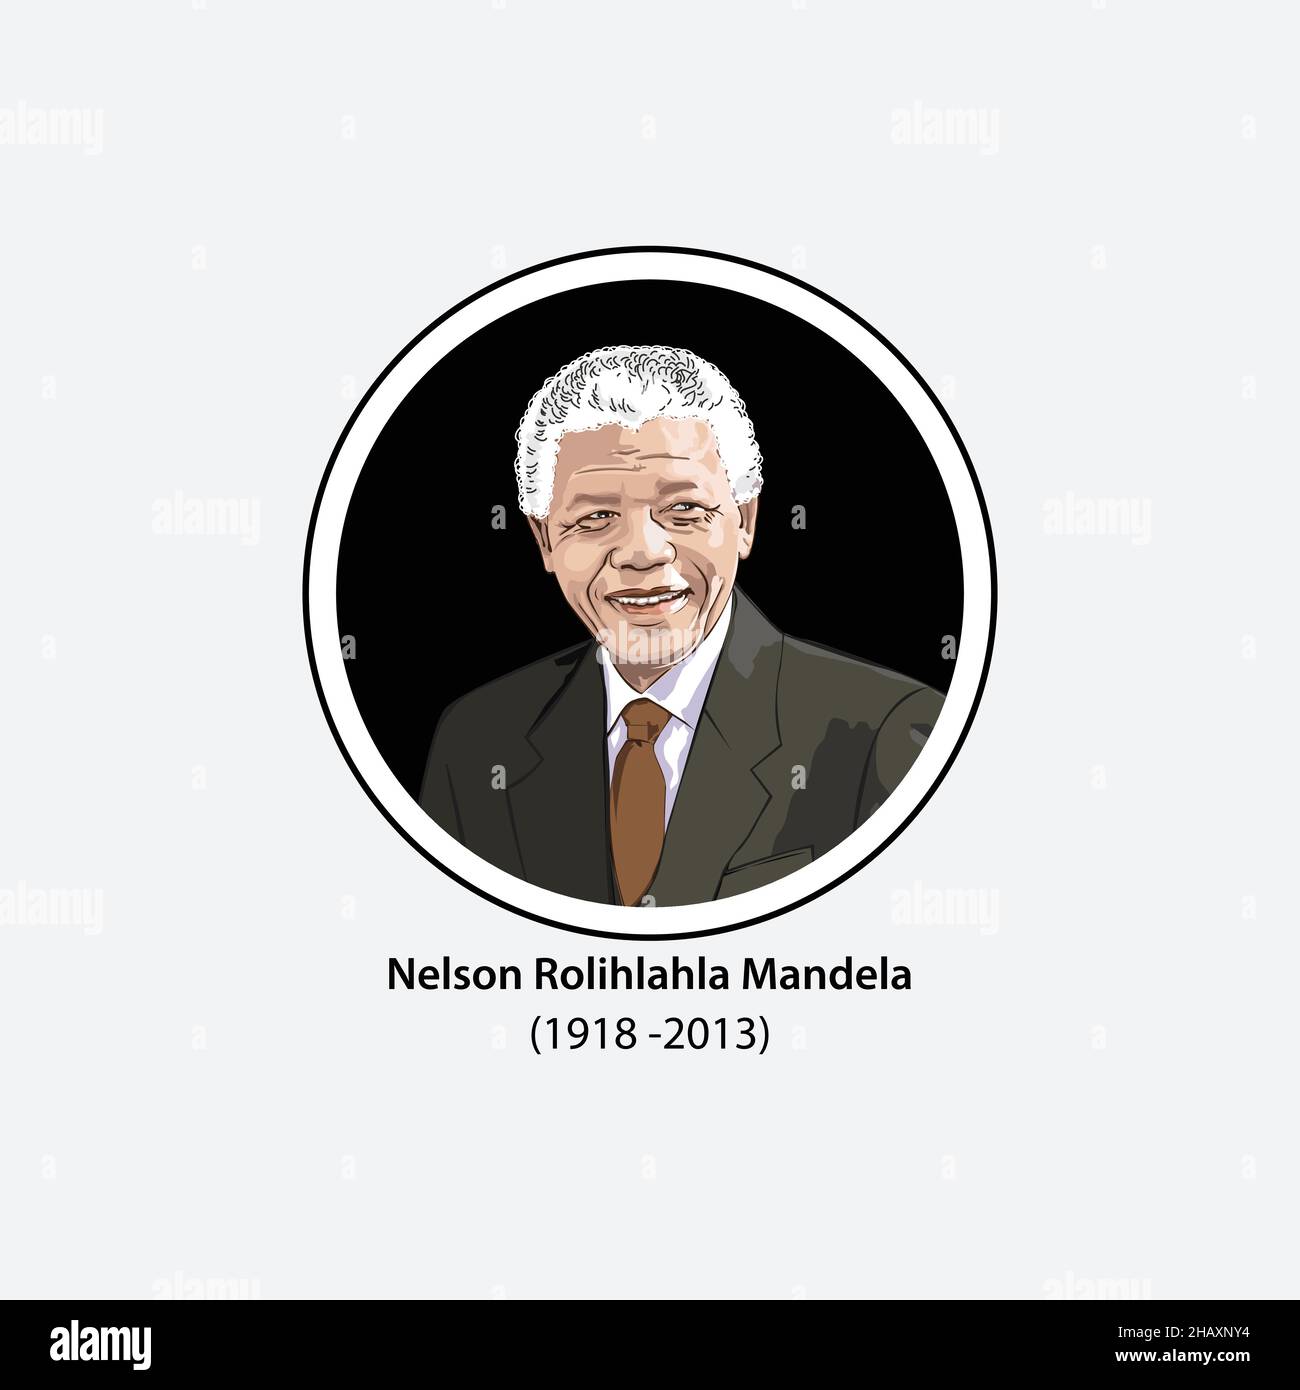 Nelson Mandela è stato un leader politico e rivoluzionario anti-apartheid sudafricano, presidente del Sudafrica dal 1994 al 1999. Illustrazione Vettoriale